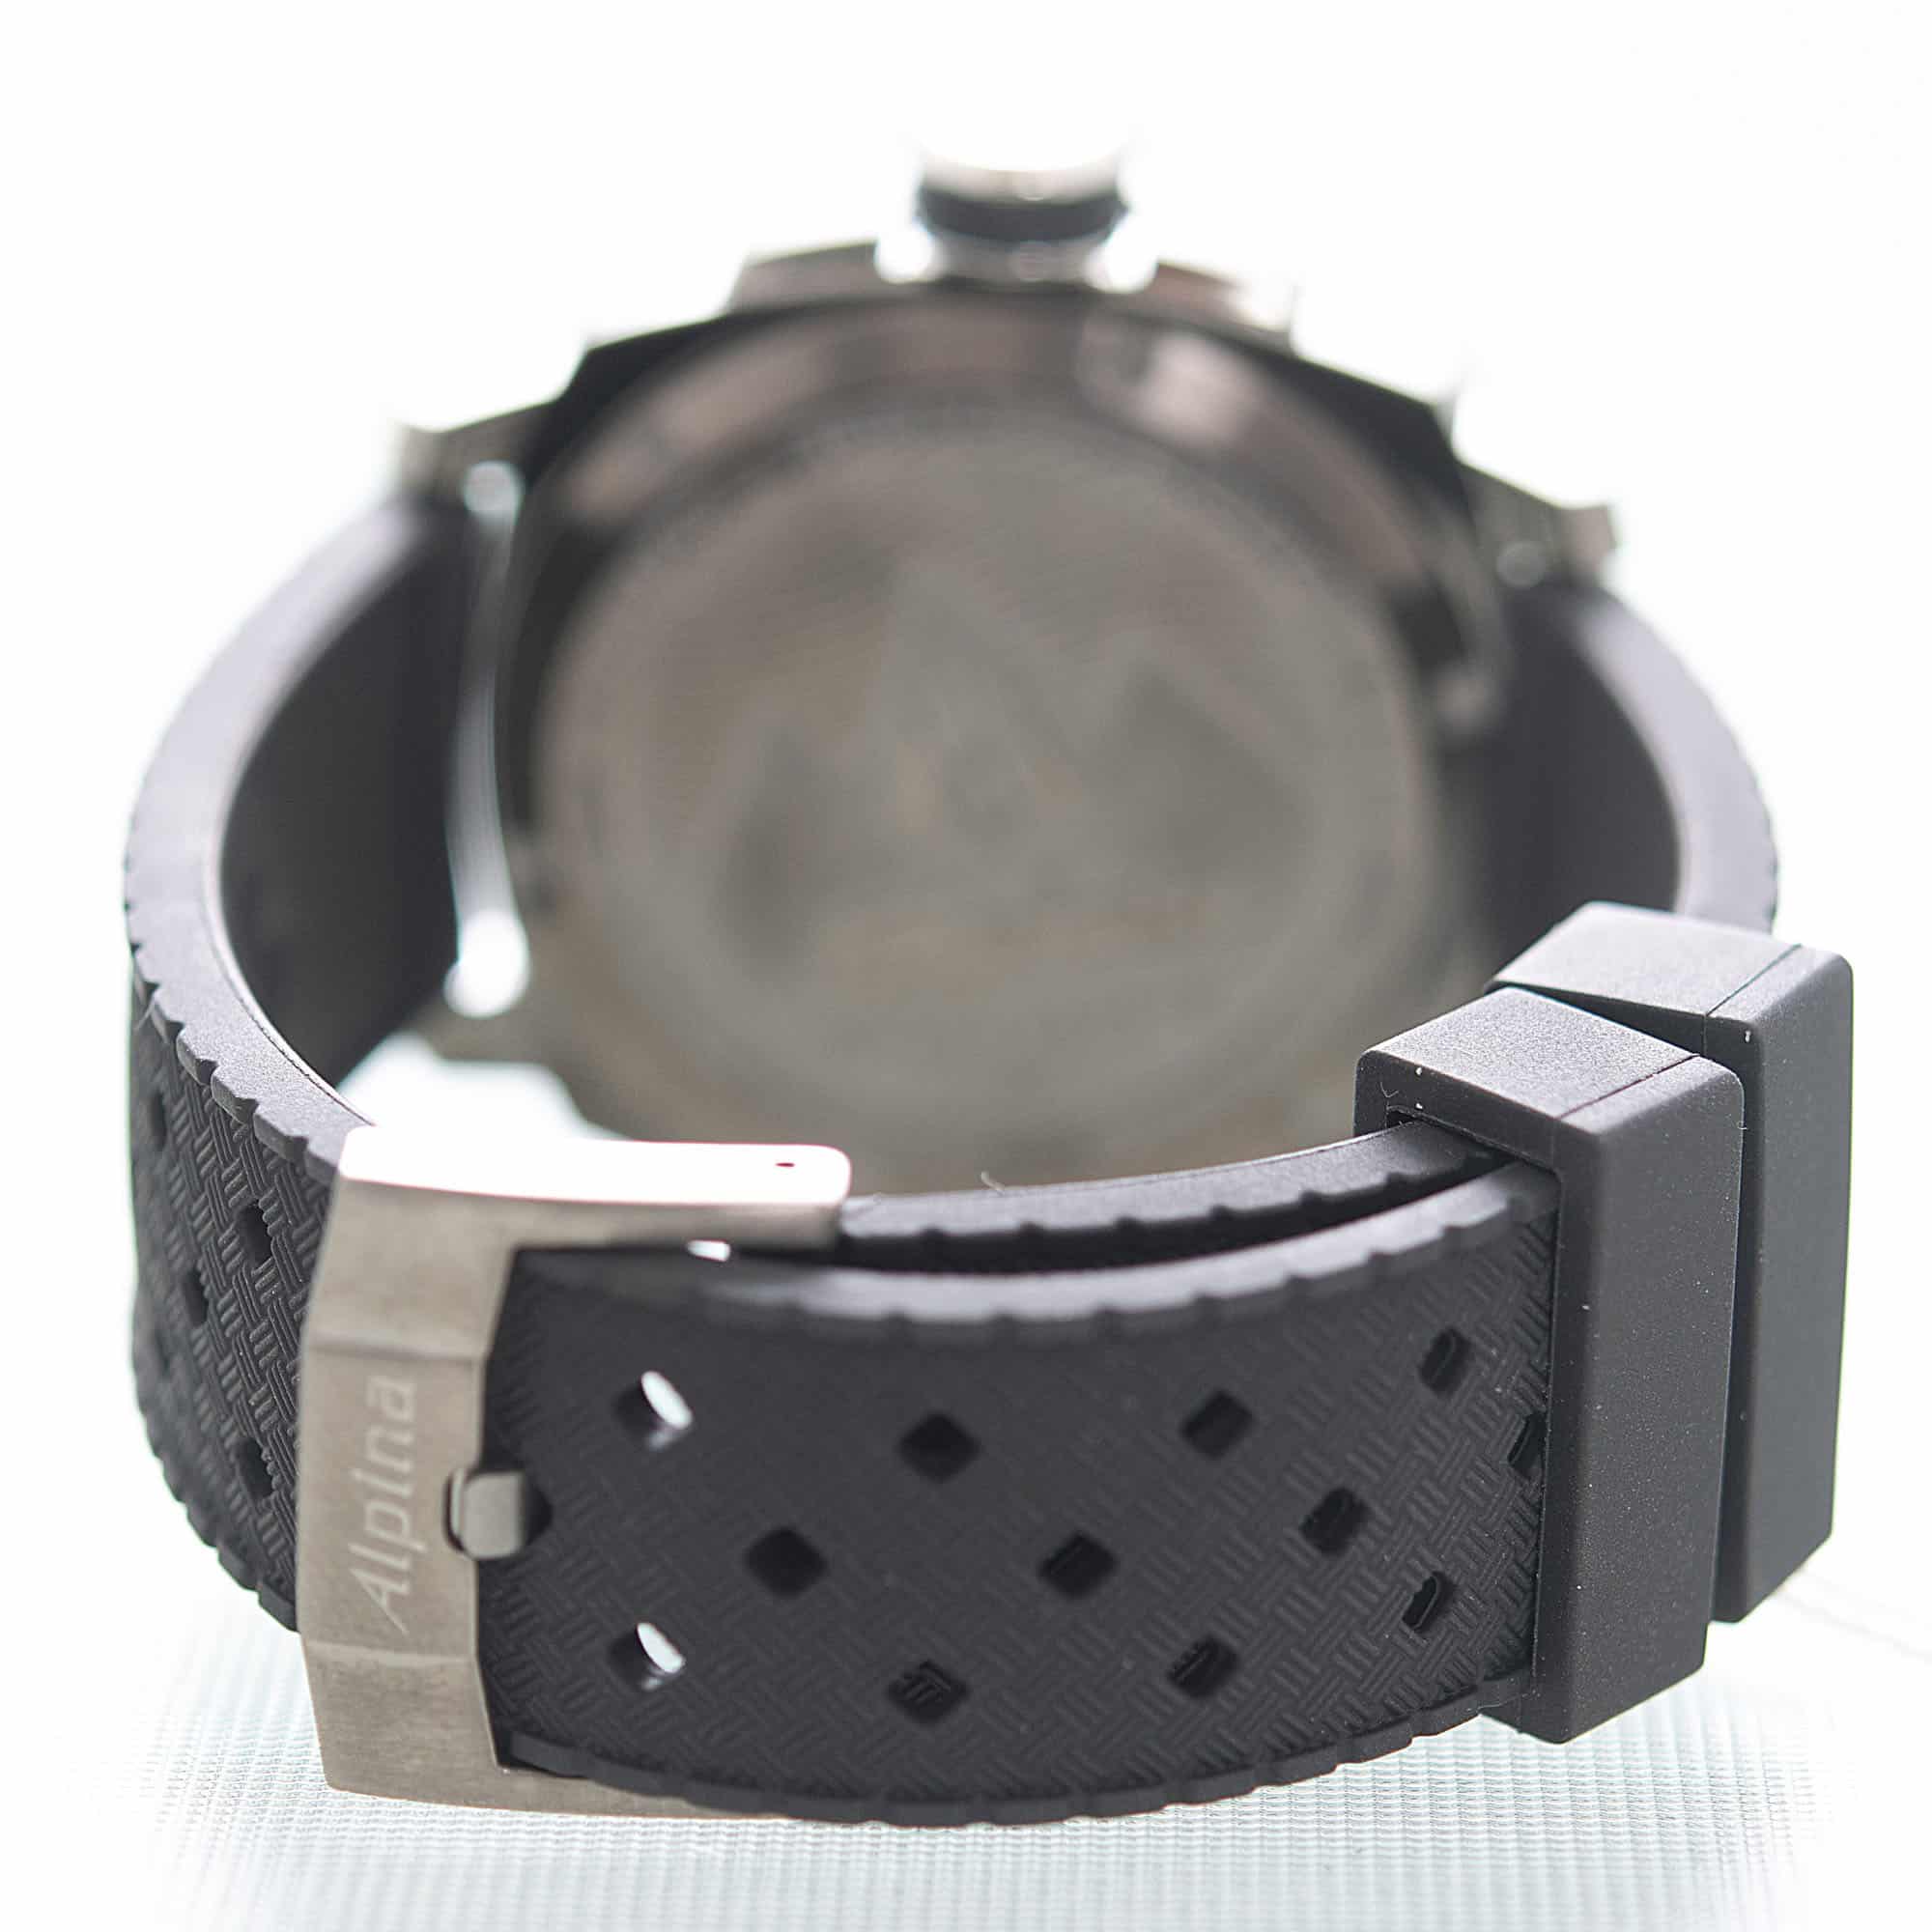 Alpina Seastrong Diver GMT Date Black Men's Quartz Watch Ref. AL-247LGG4TV6